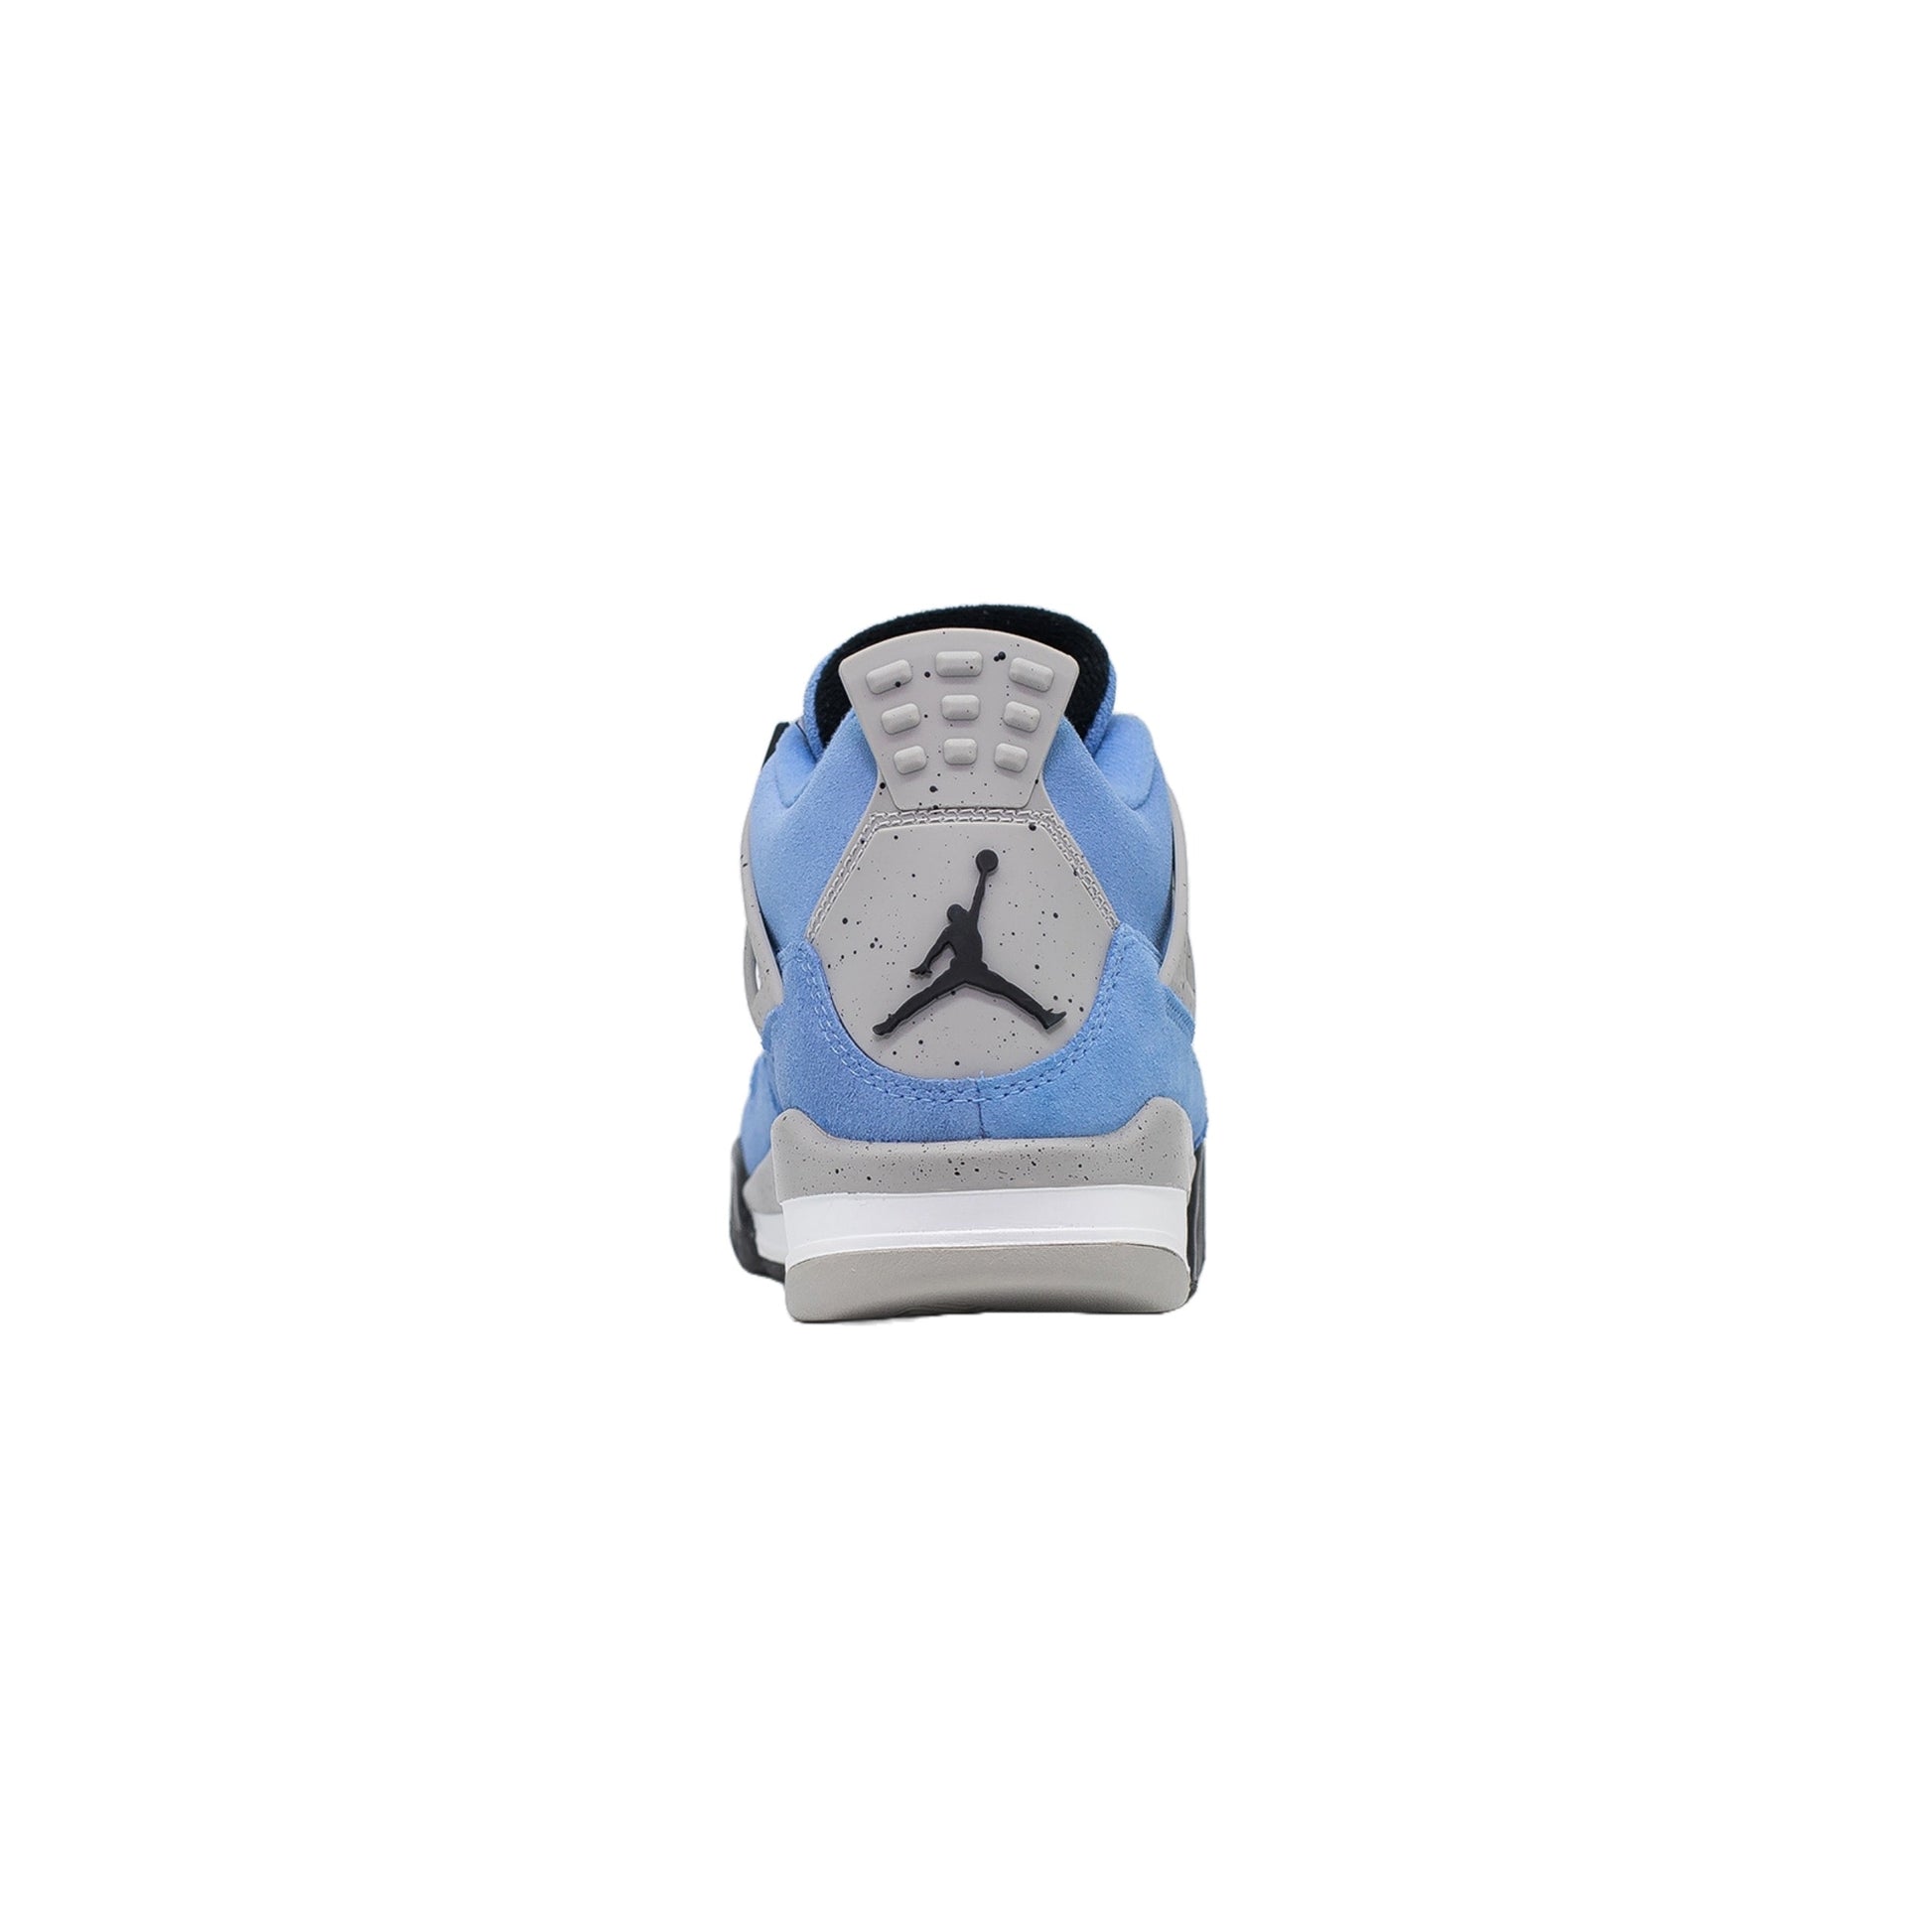 Air Jordan 4 (GS), University Blue